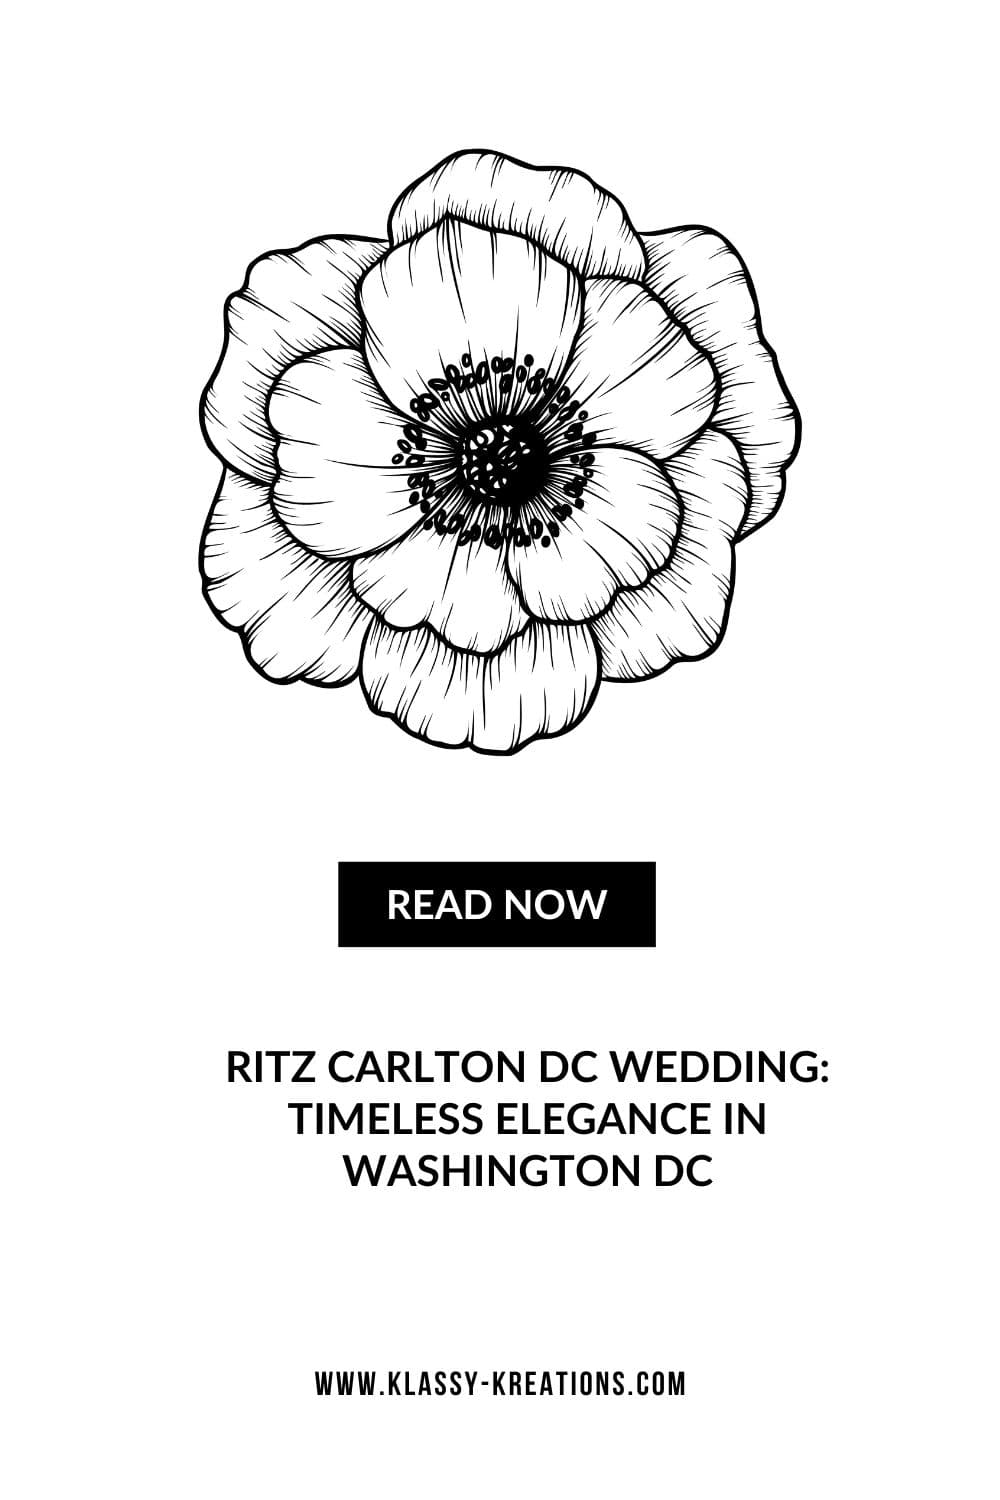 blog-post-ritz-carlton-dc-wedding-timeless-elegance-in-washington-dc